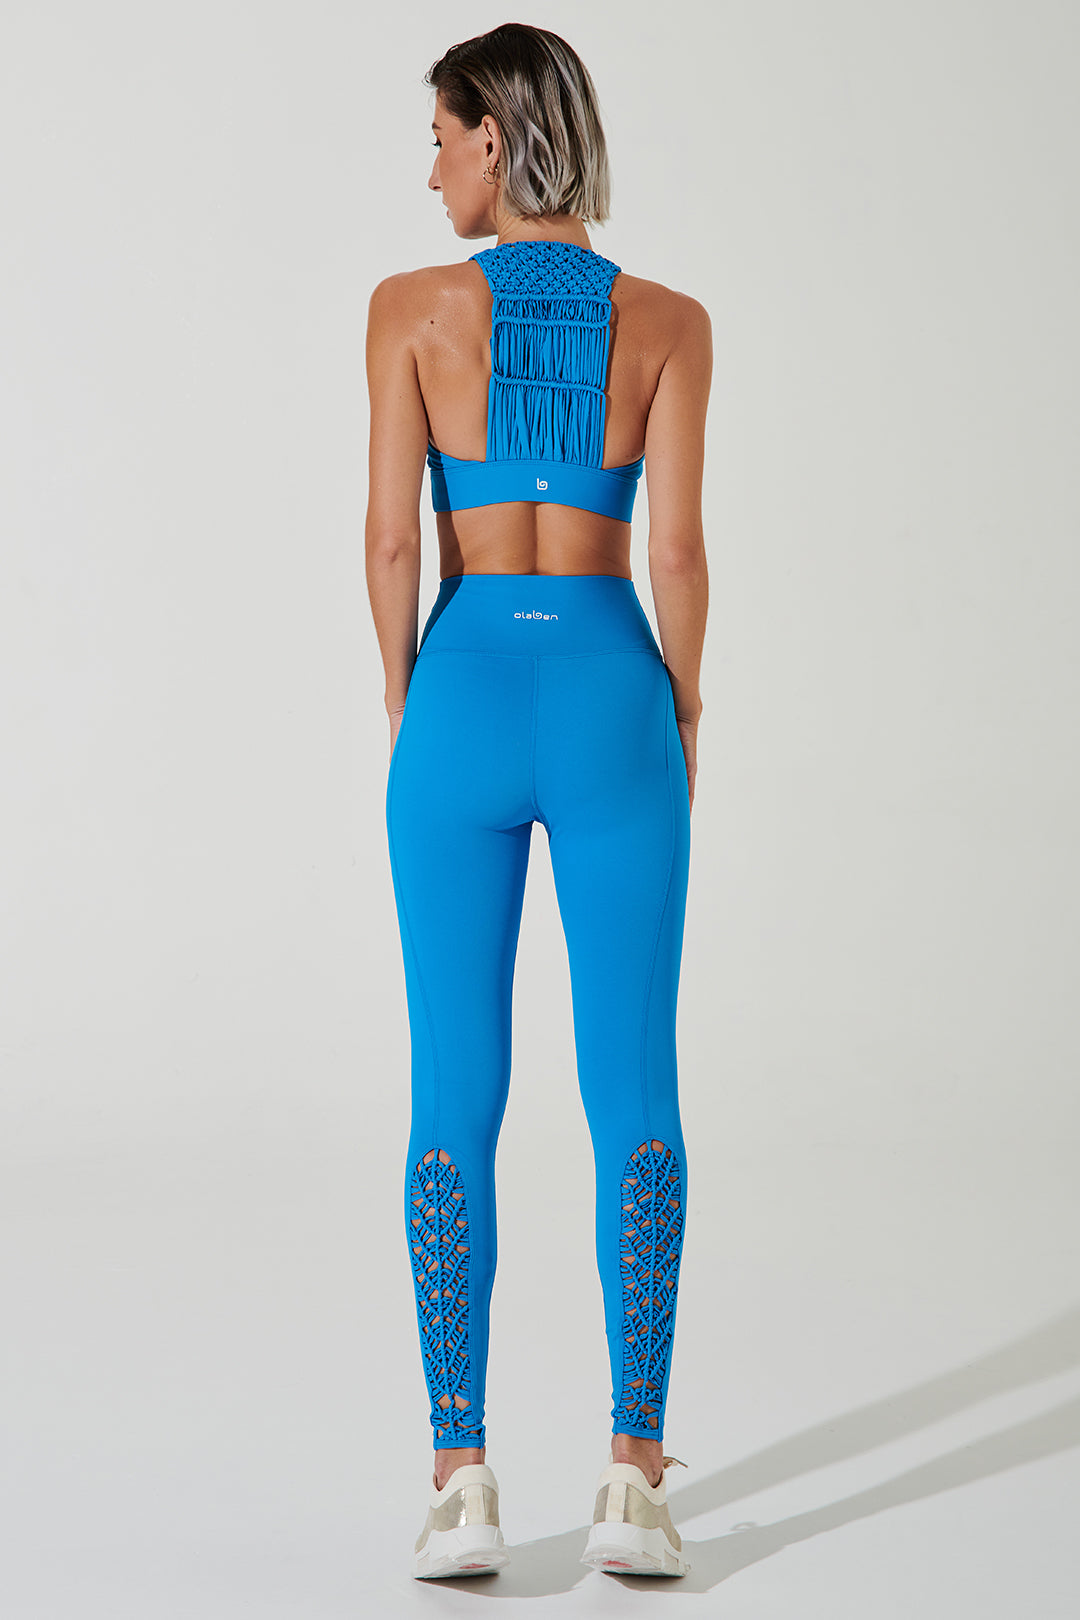 S] Colorfulkoala Yoga / Gym Leggings in Sapphire Blue, Women's